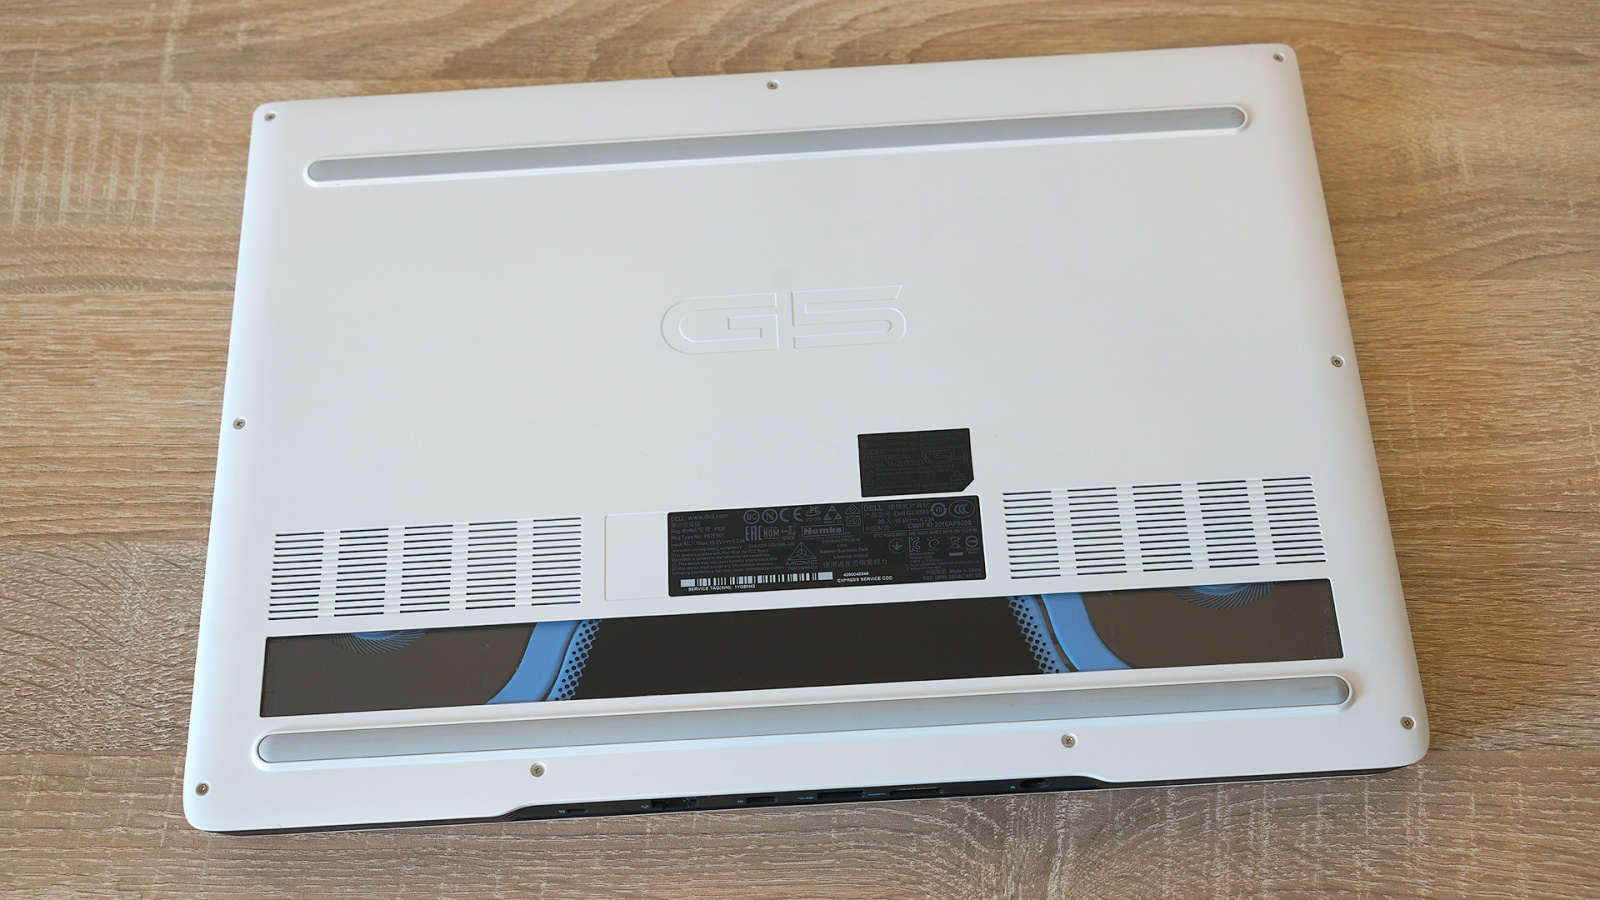 Dell G5 5590: один из самых доступных игровых ноутбуков с RTX 2060 - 4